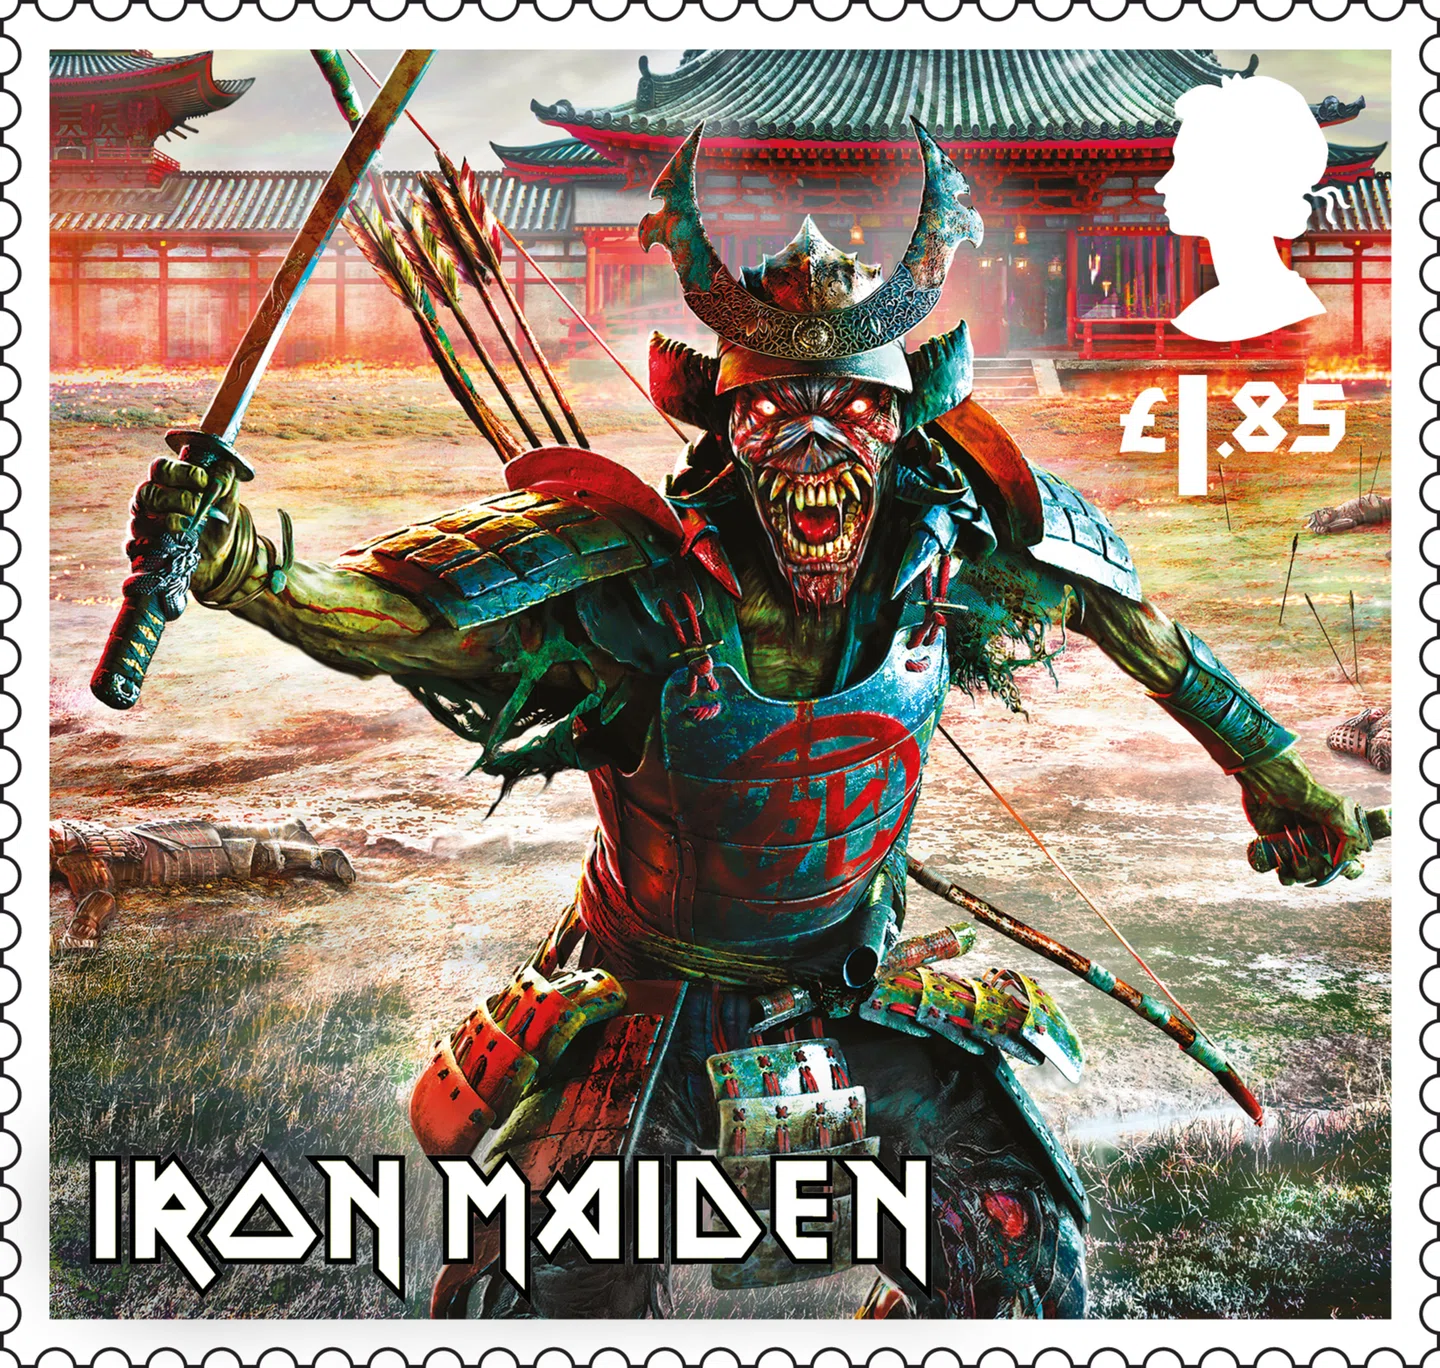 Os selos do Iron Maiden Royal Mail são de primeira classe